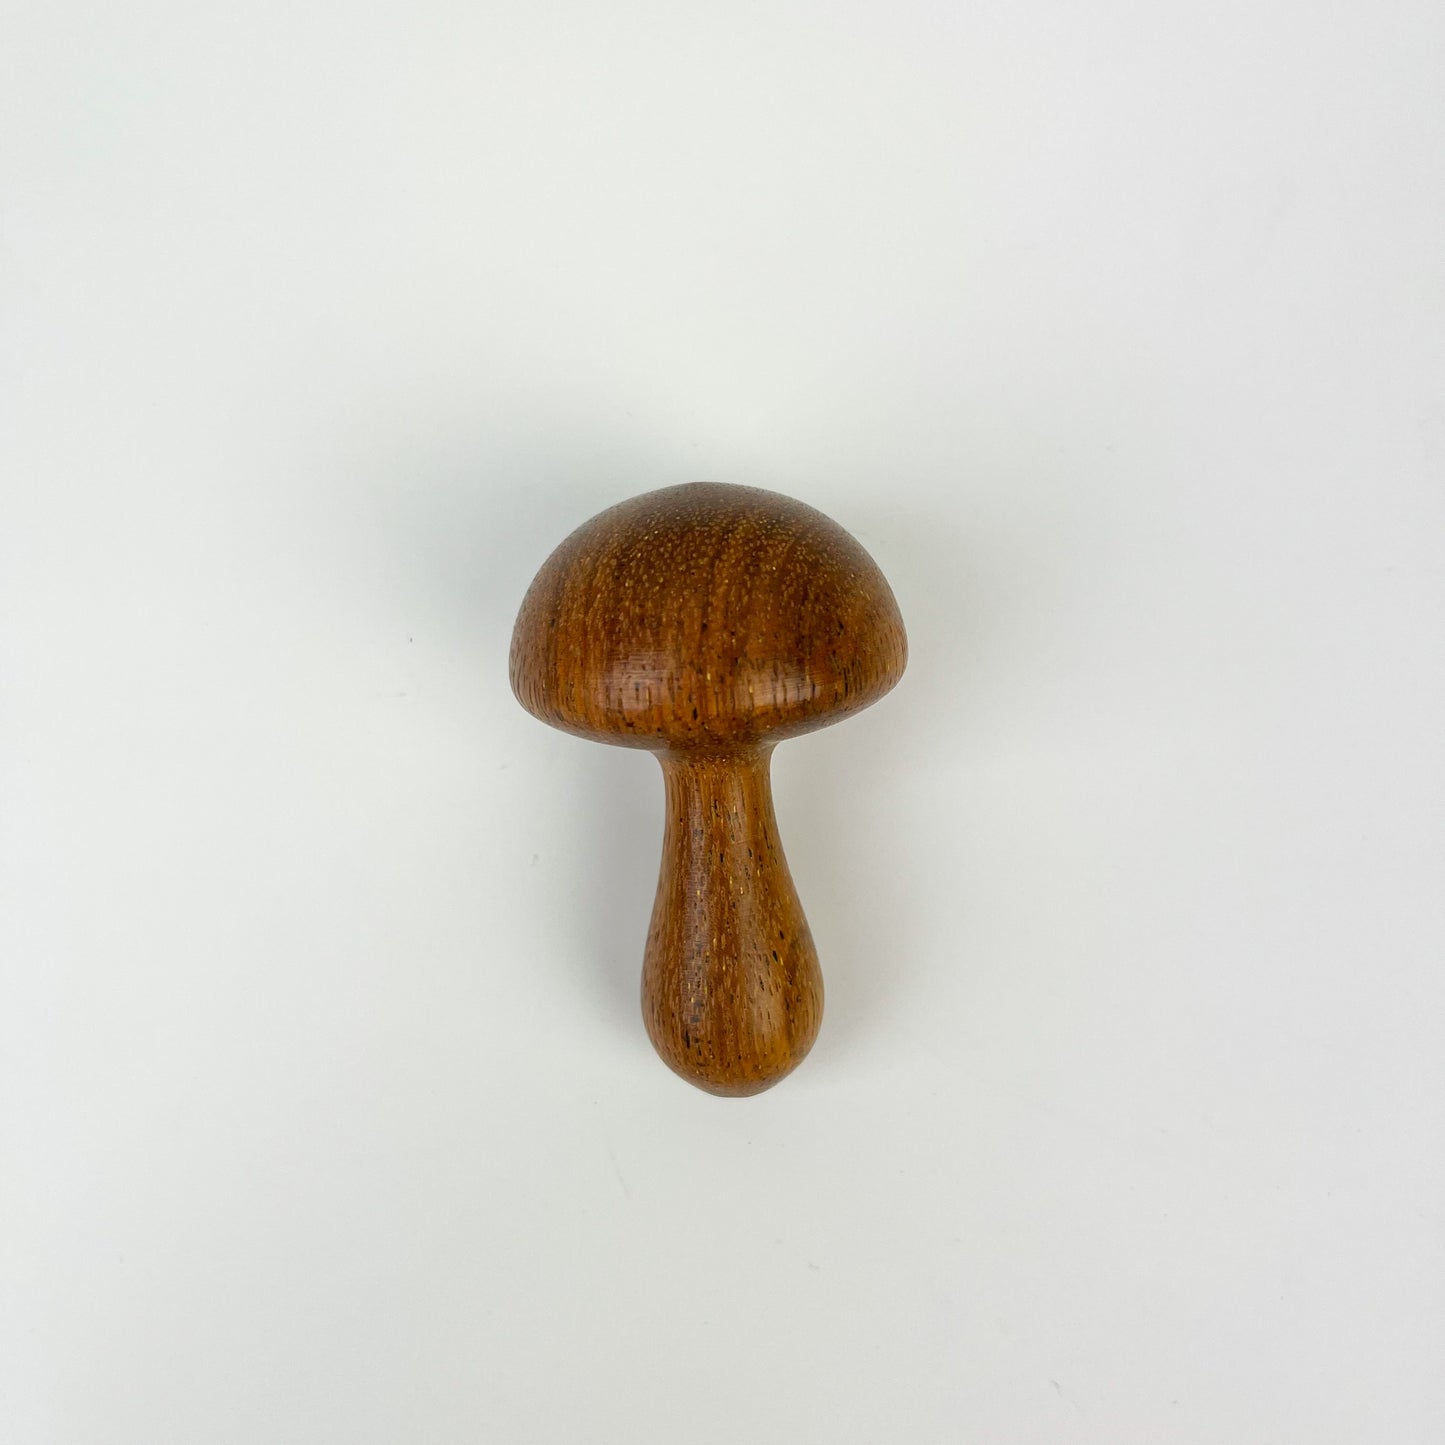 Handmade Wooden Mushroom Darner